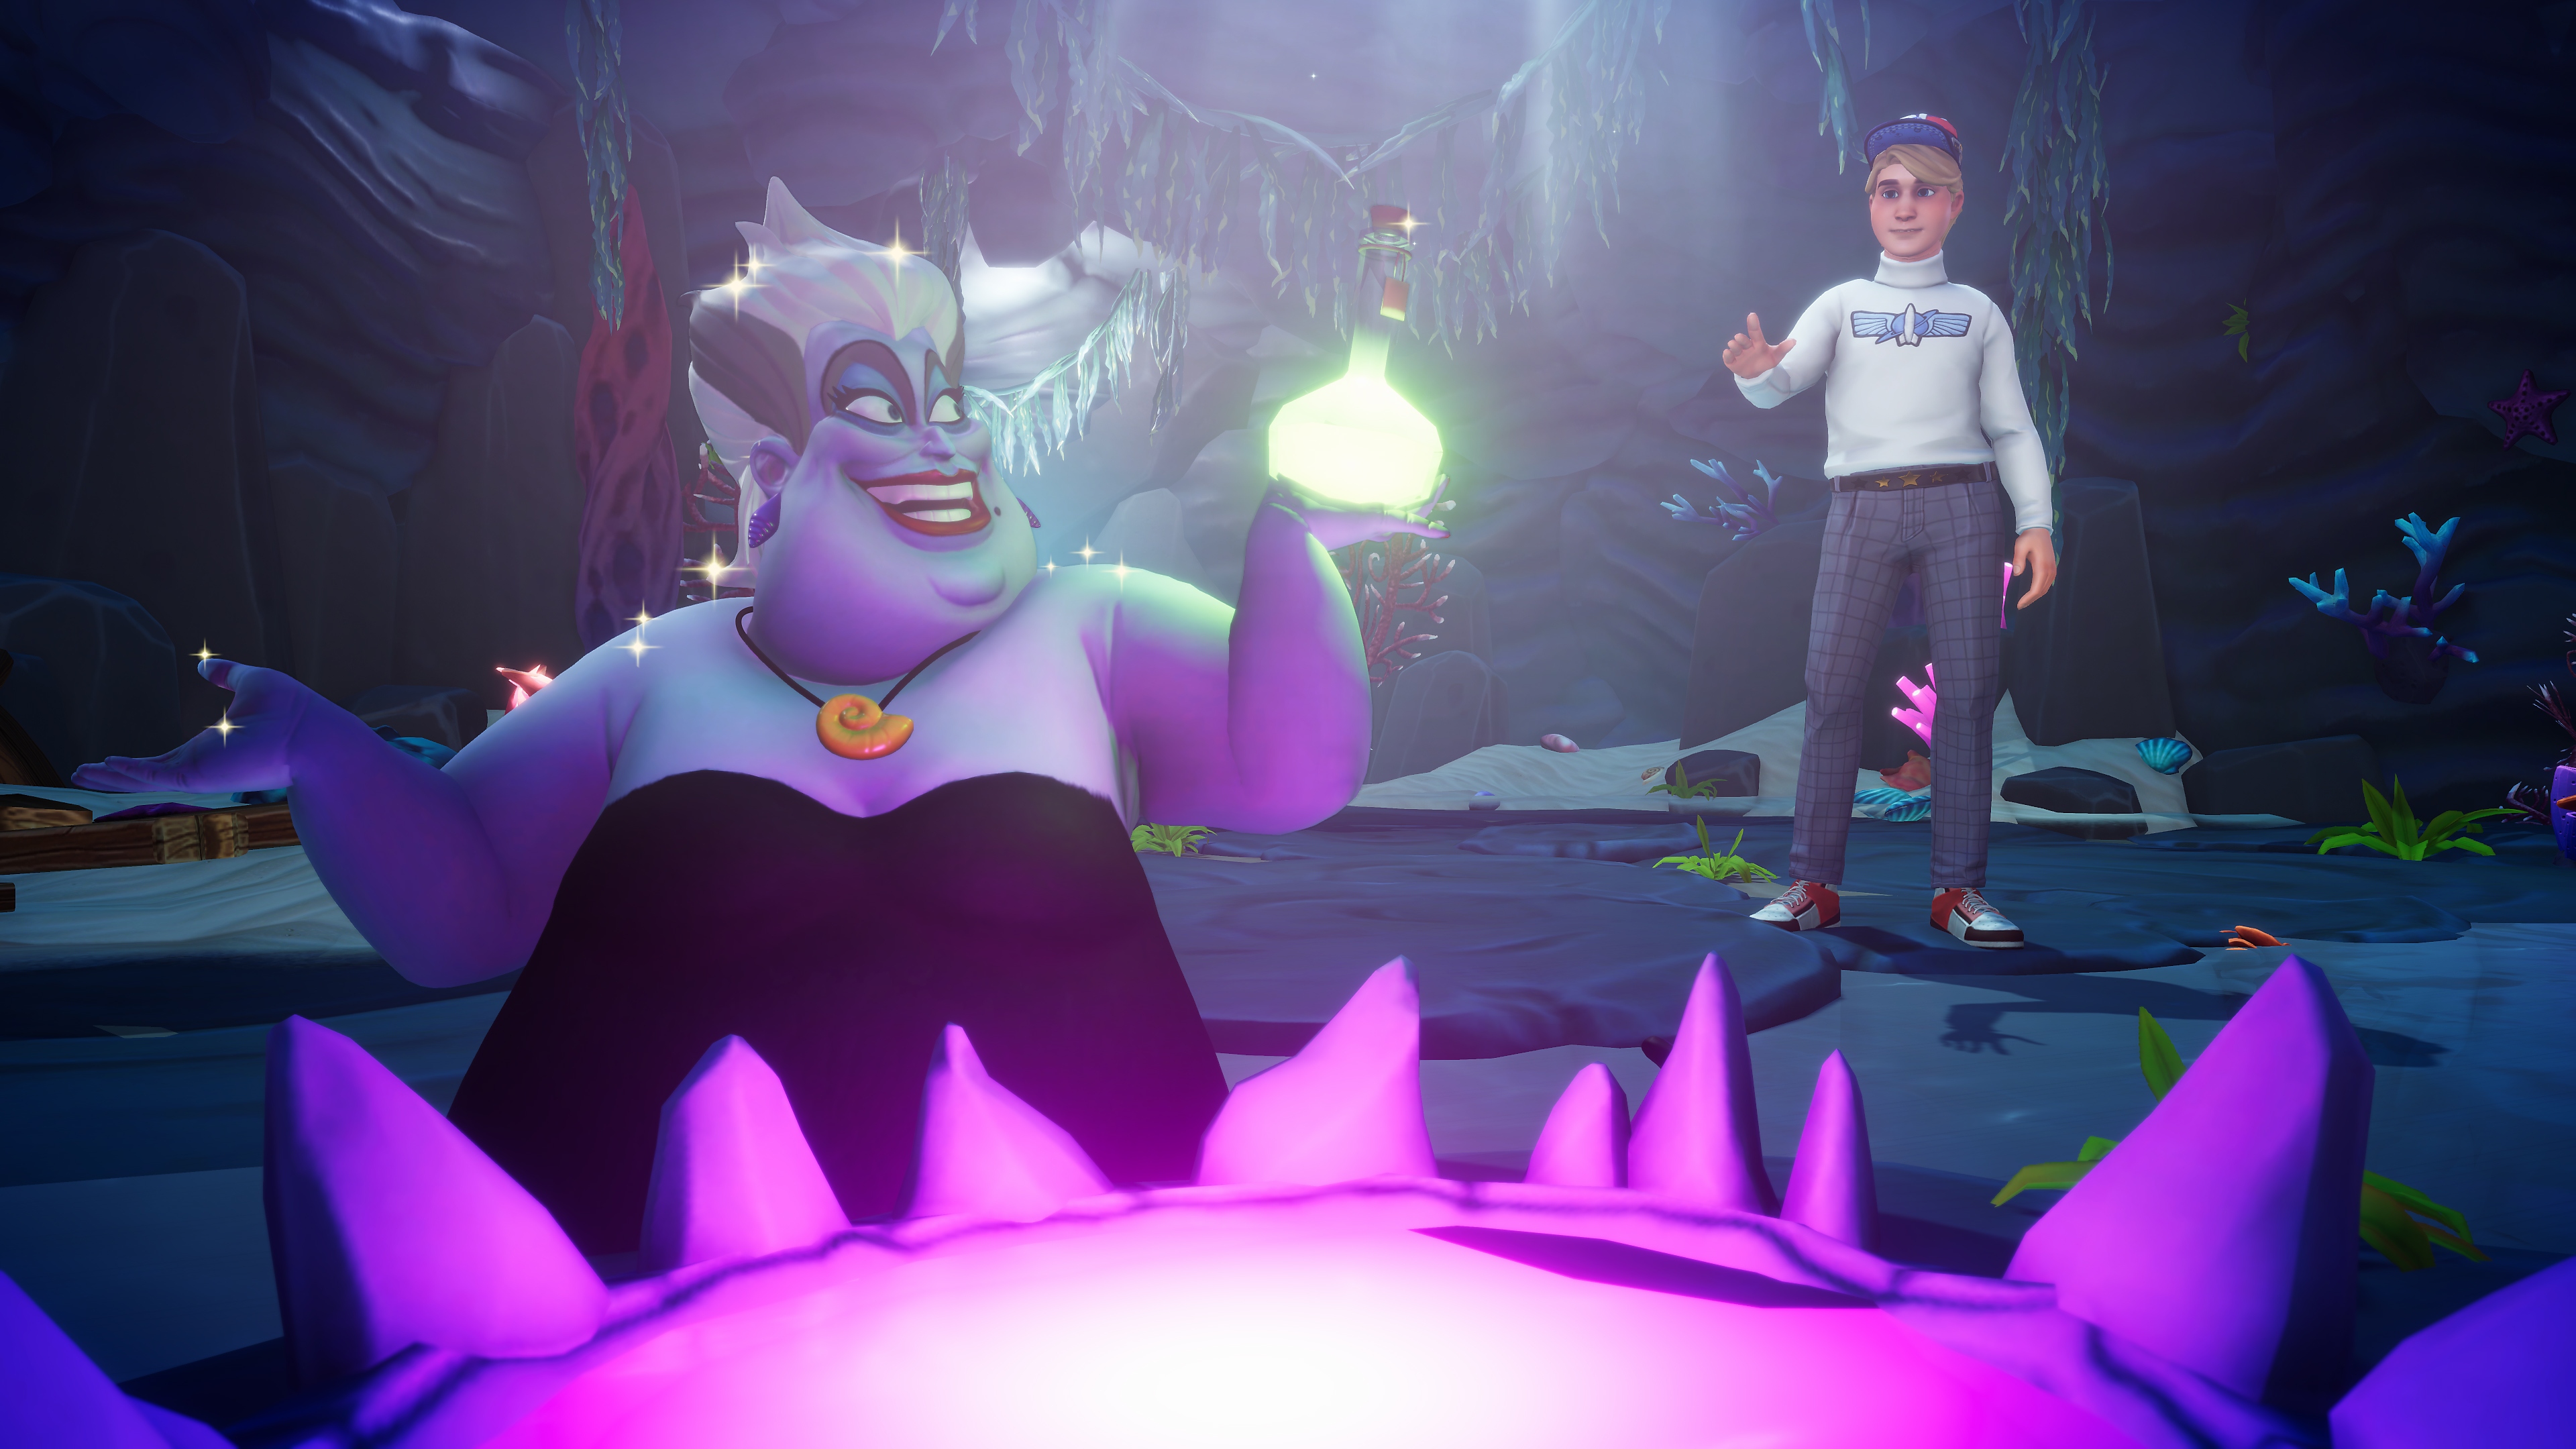 لقطة شاشة للعبة Disney Dreamlight Valley تعرض أورسولا وصورة رمزية للاعب